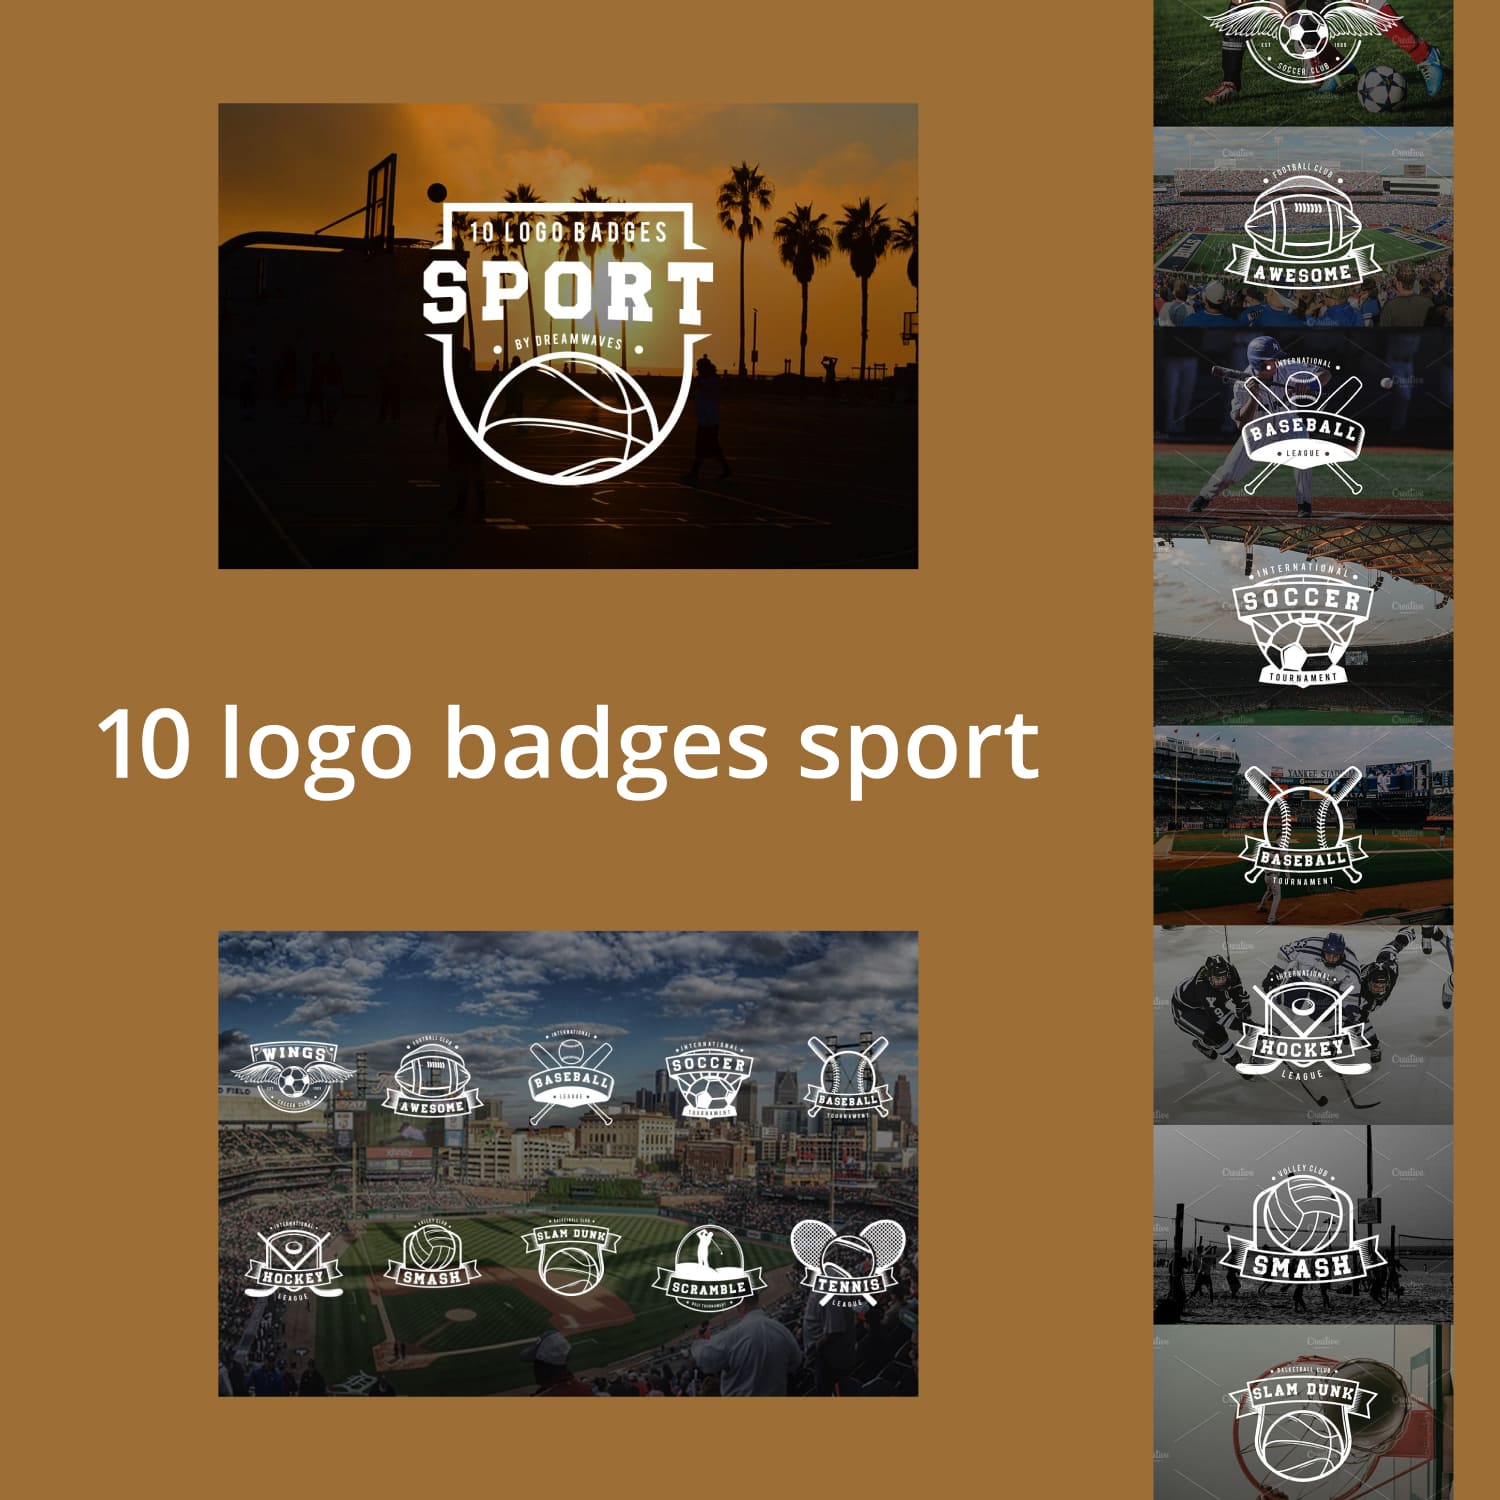 10 logo badges sport.